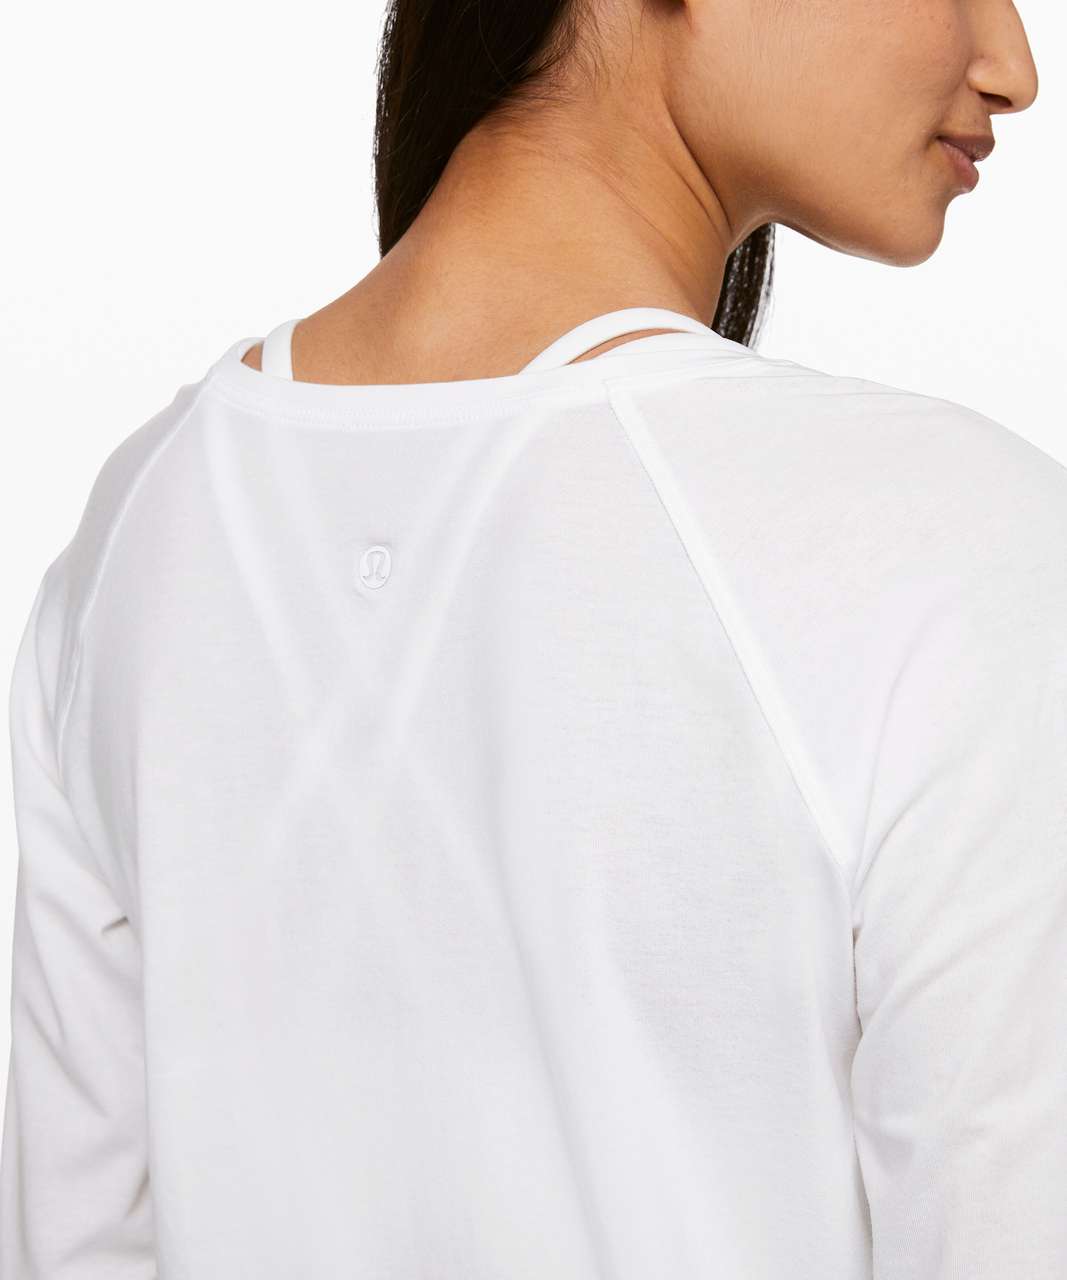 White Lululemon Long Sleeve Shirt